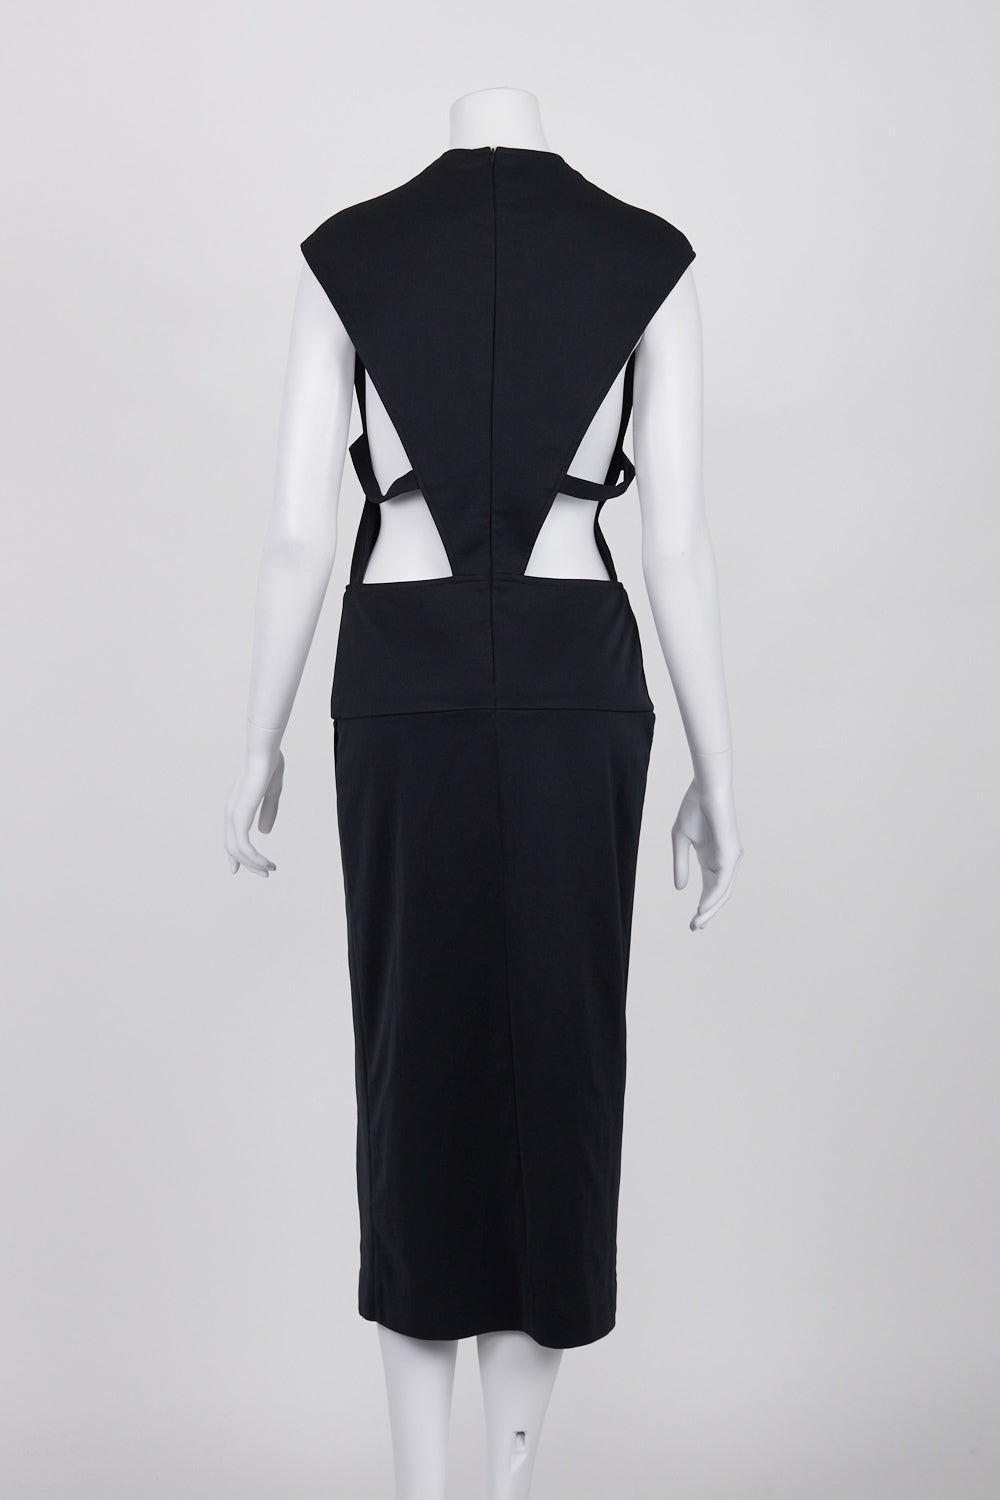 Maurie &amp; Eve Black Side Cutout Midi Dress 12